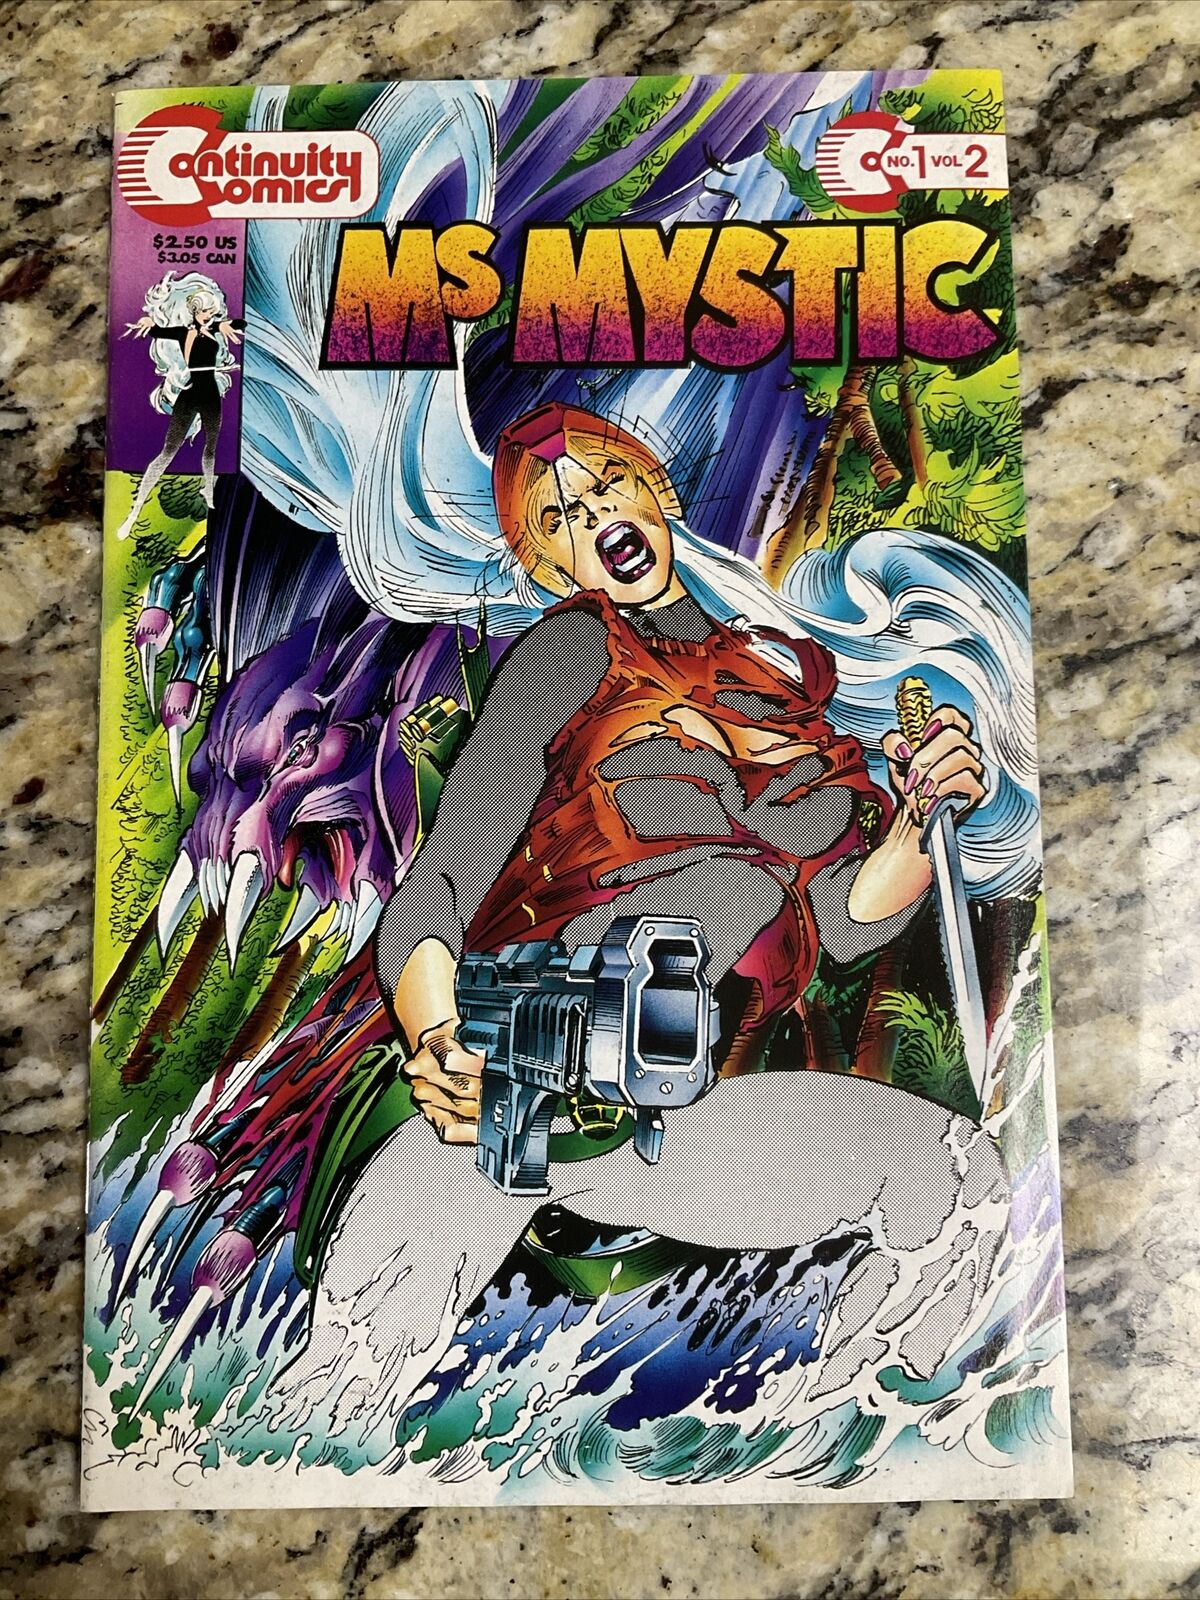 Ms Mystic #1 Vol.2 Continuity Comics VF